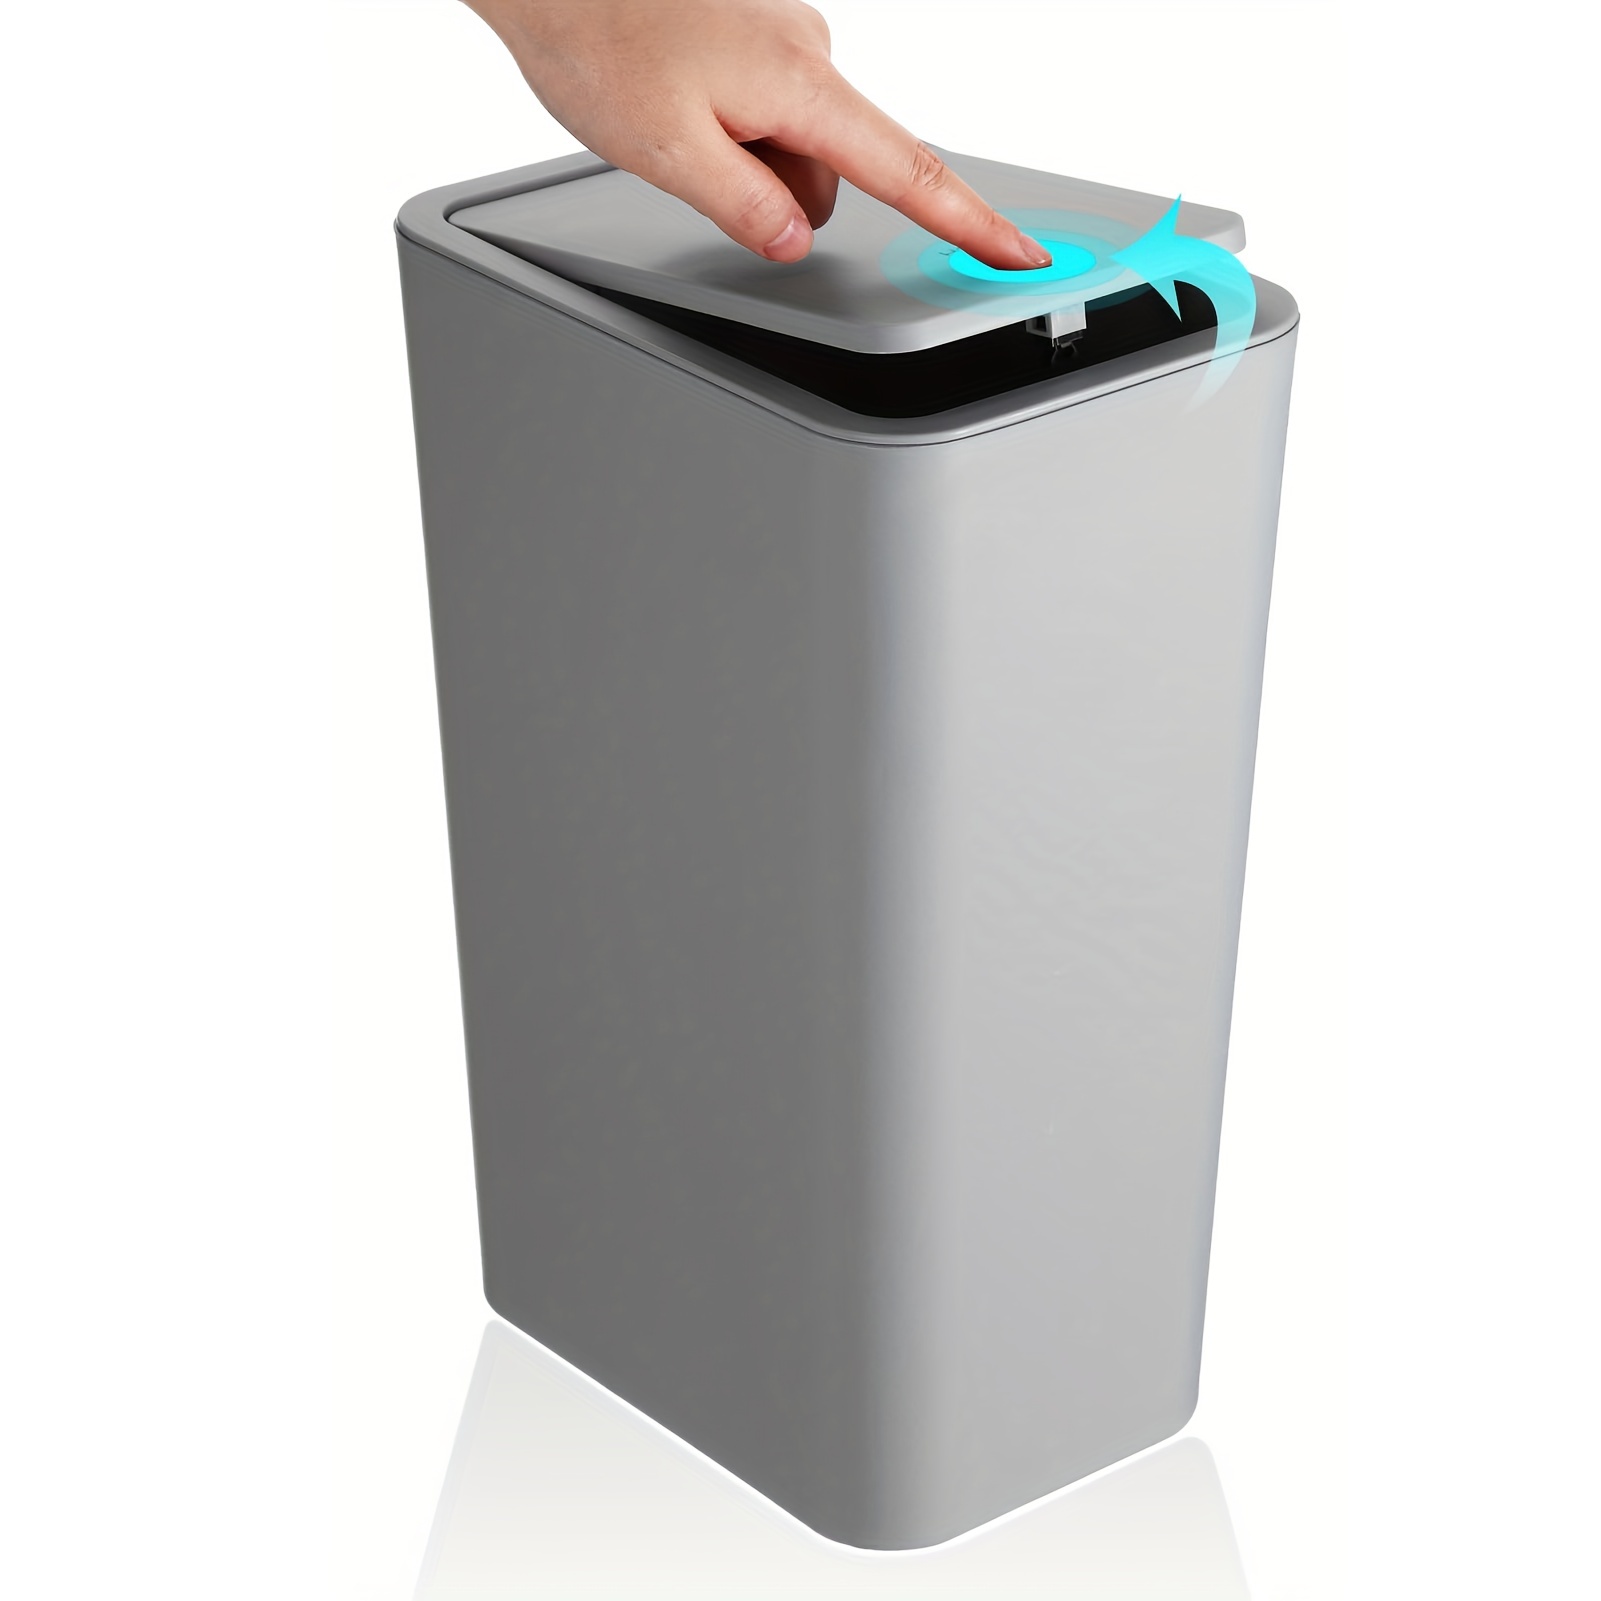  Dicunoy Cubo de basura delgado de plástico, contenedor de  basura blanco de 2.4 galones, papelera pequeña para baño, sala de estar,  hogar, cocina, oficina, reciclaje : Industrial y Científico